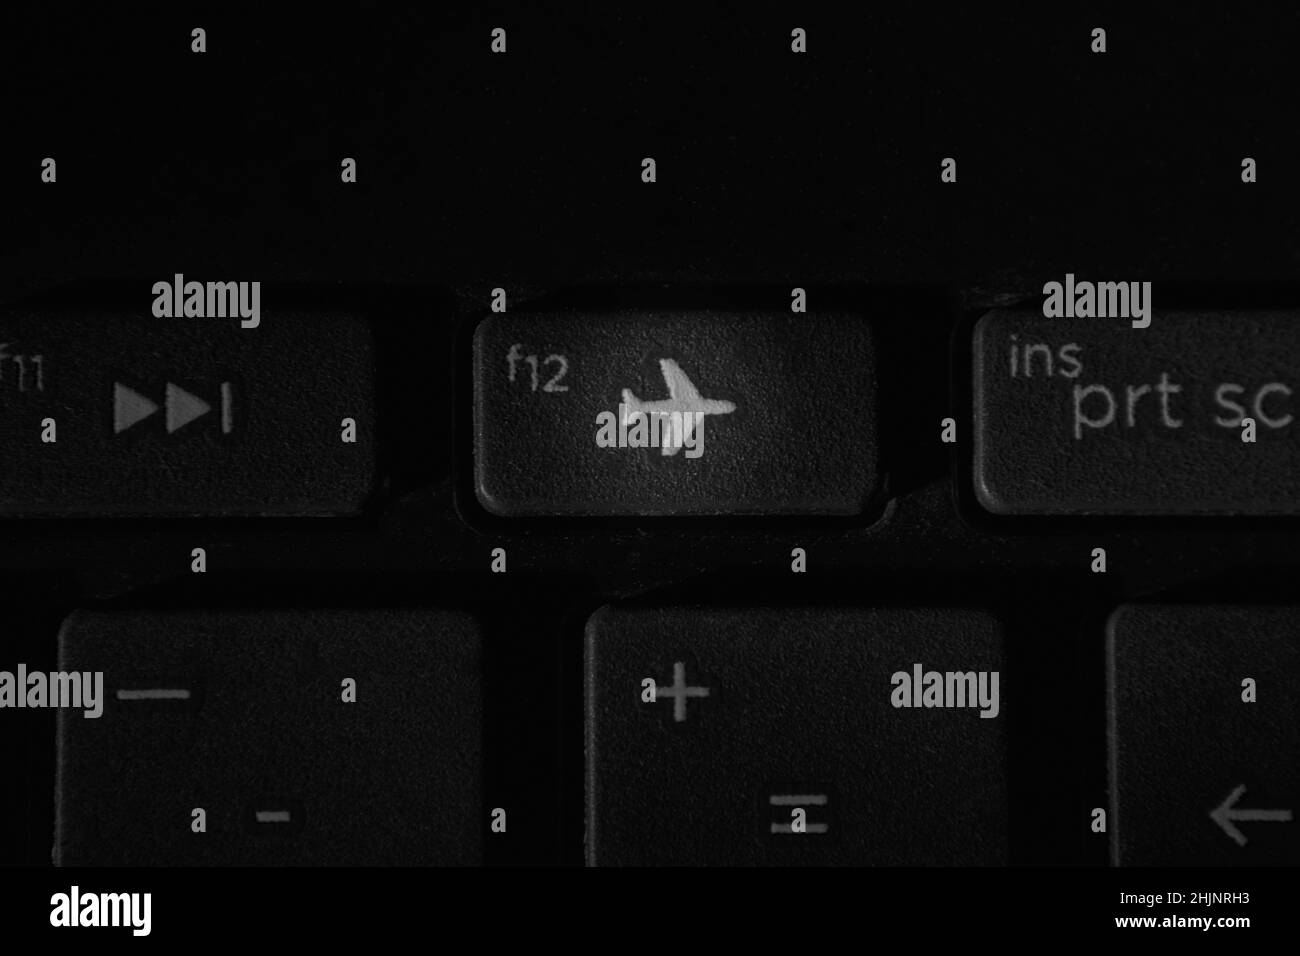 keyboard shortcut for sleep windows 10